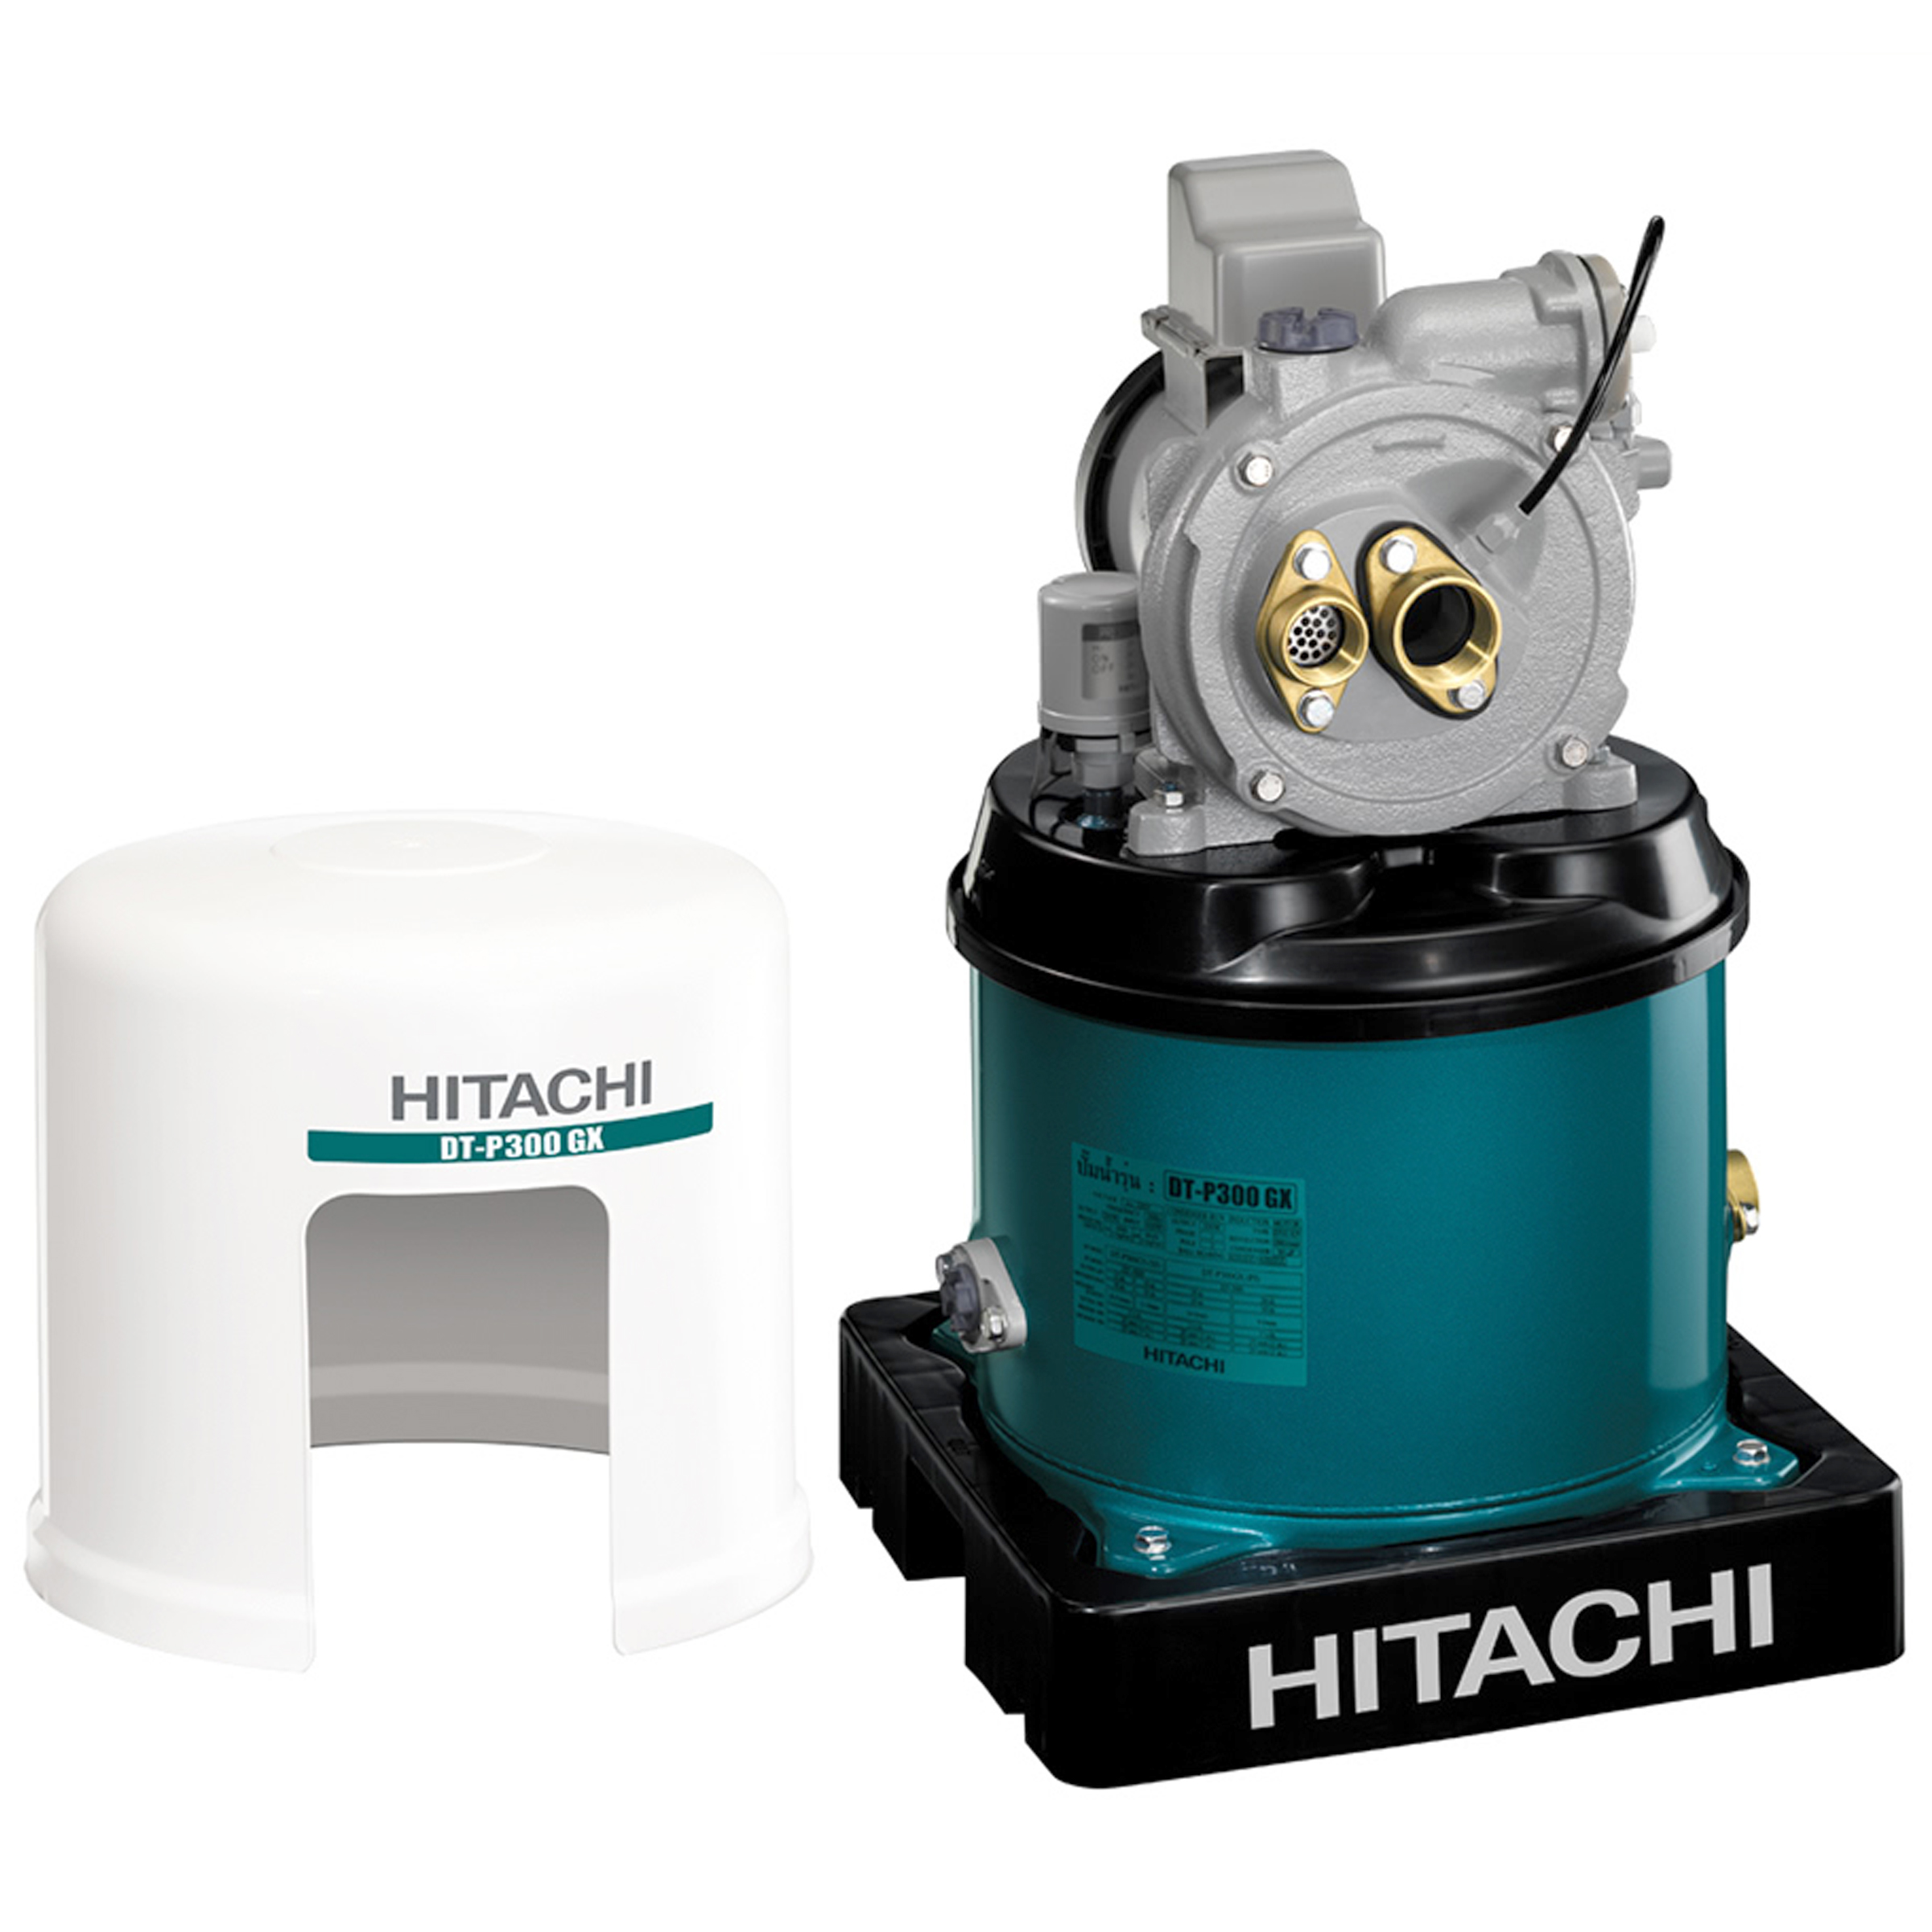 Hitachi Deep Well Pump 300W, 20L/min, DT-P300GX(PJ)